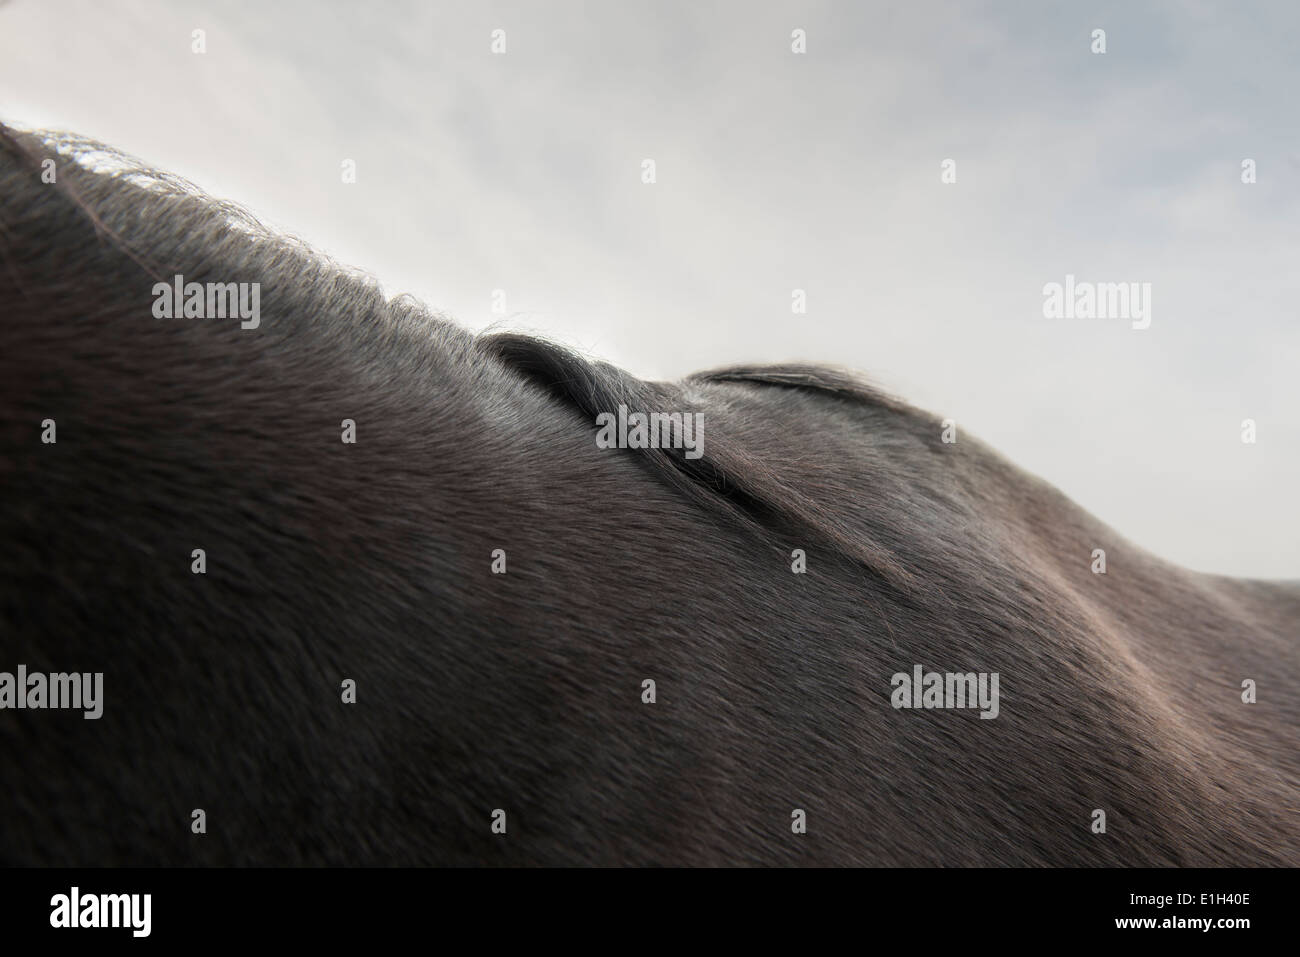 Zugeschnittenes Bild des schwarzen Pferdes Hals und Rücken Stockfoto